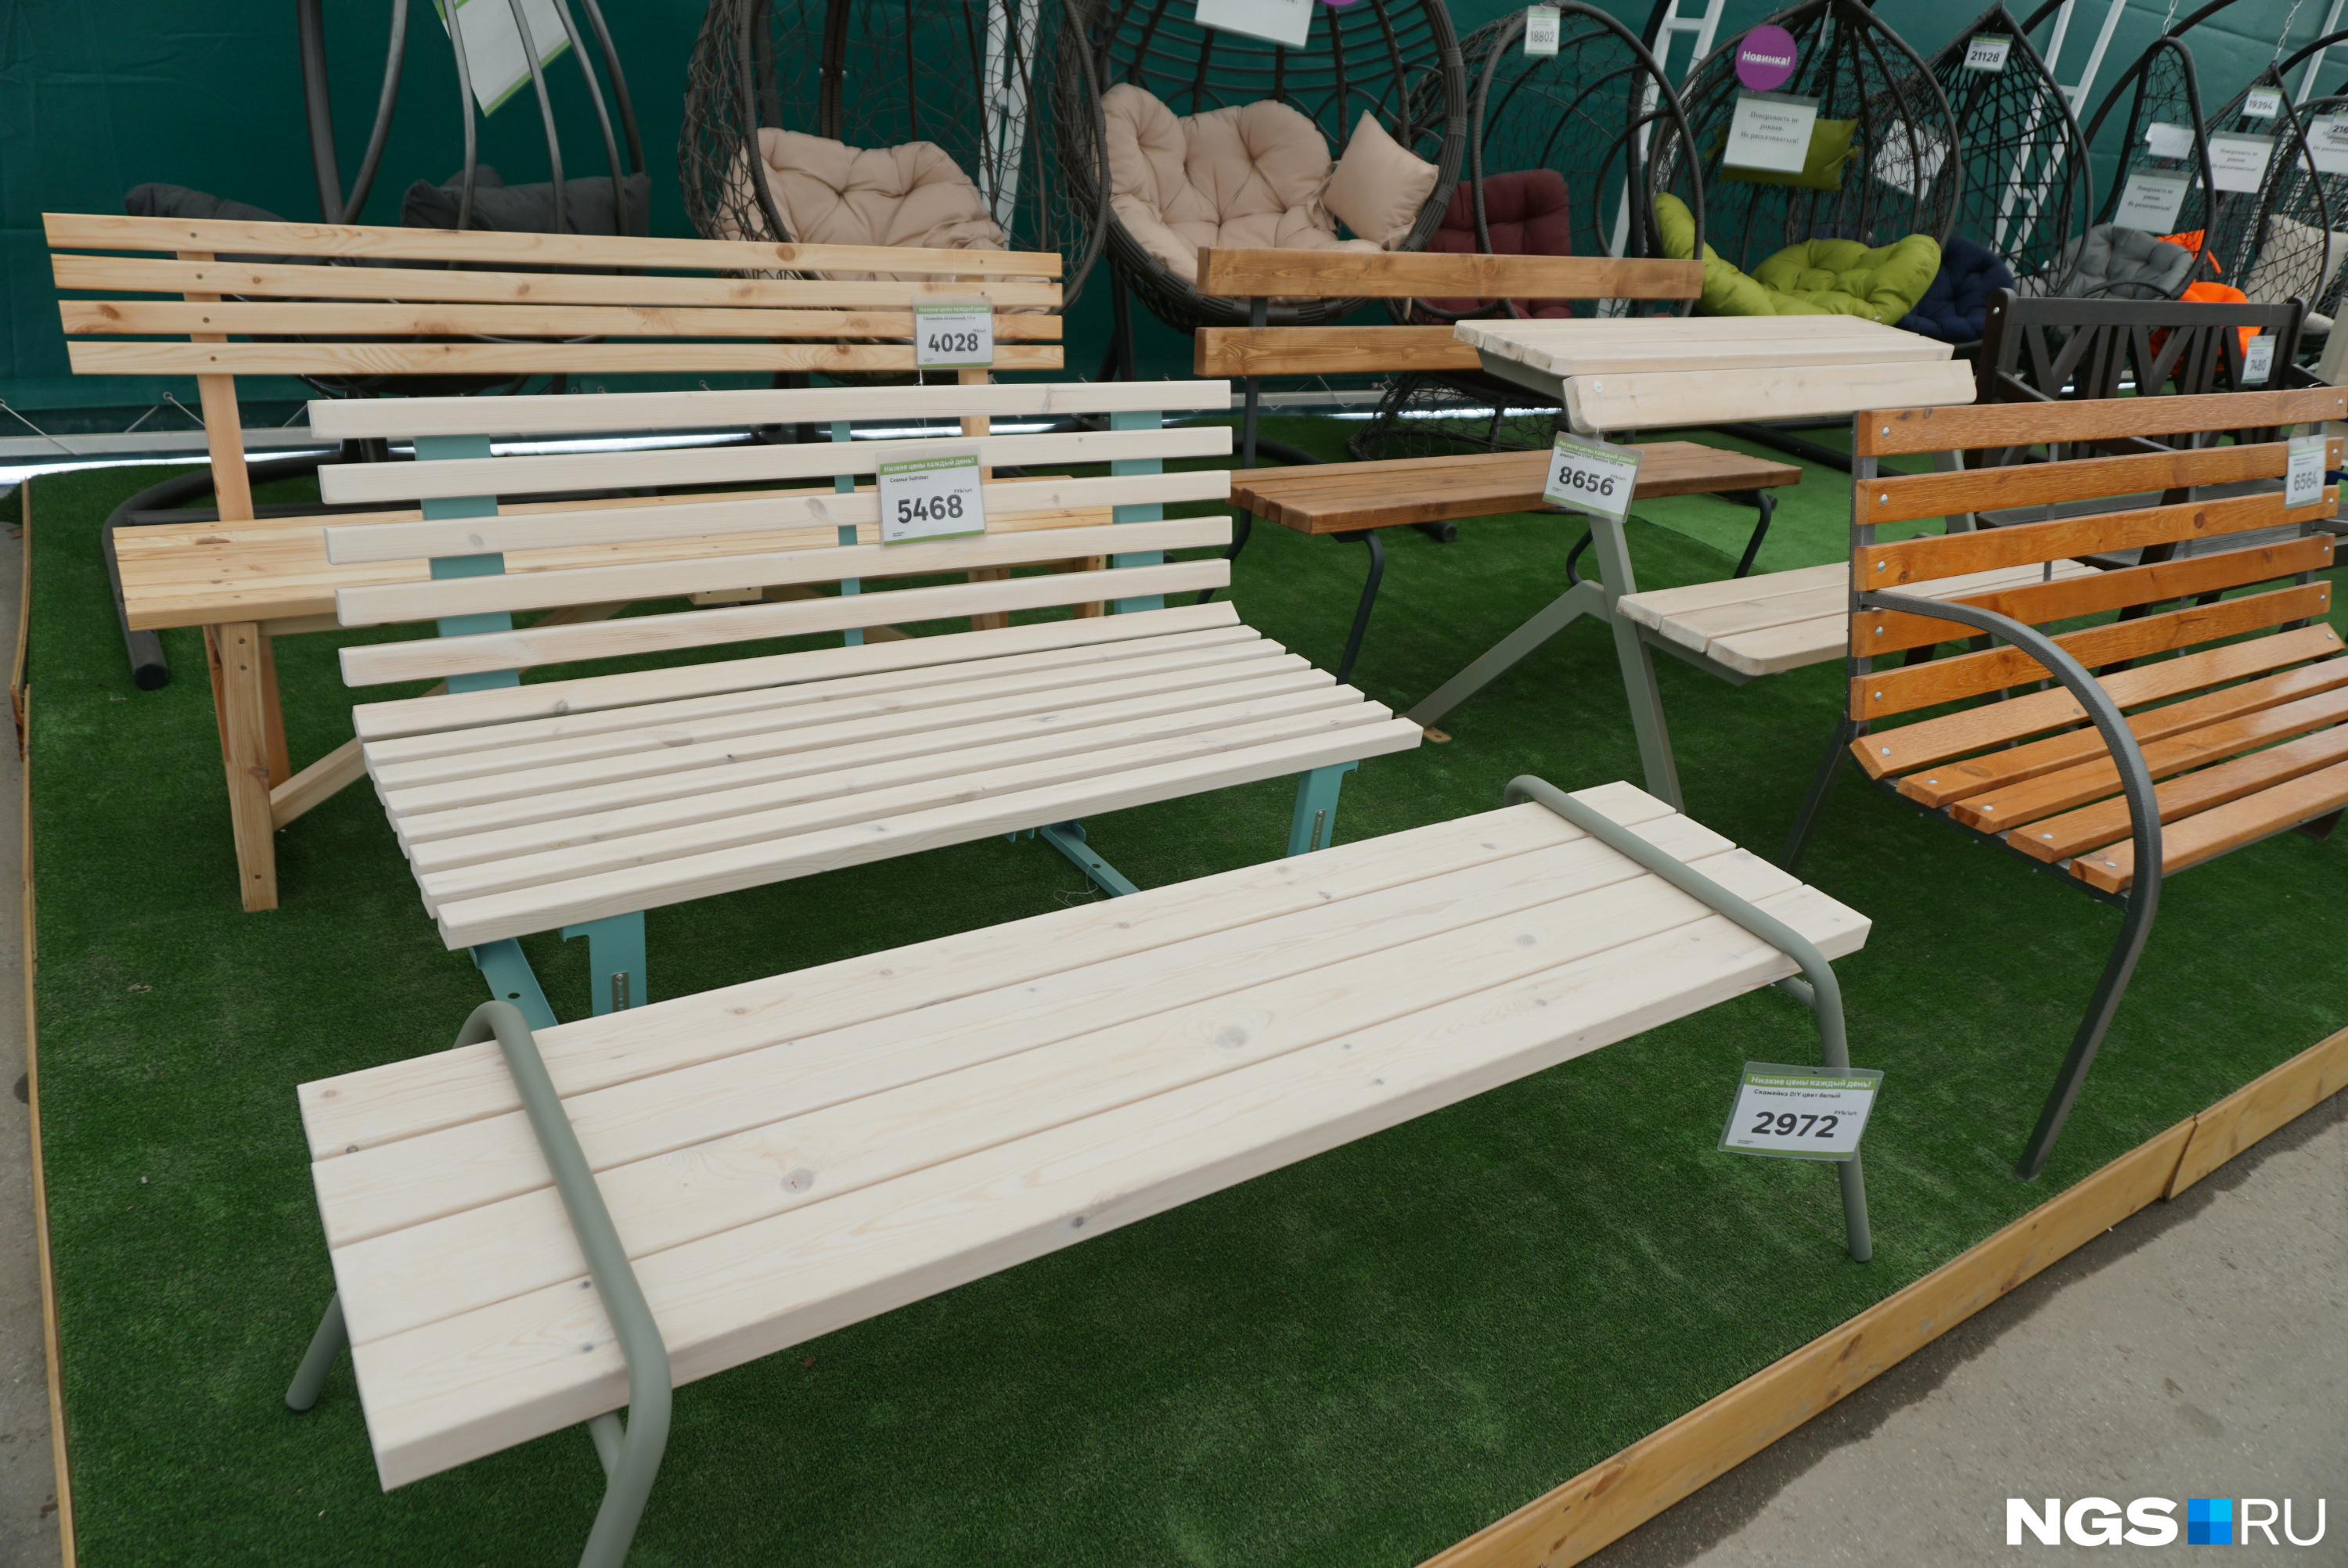 Есть и более утилитарные варианты — обычная деревенная скамейка стоит чуть больше <nobr class="_">4 тысяч</nobr> рублей. Складной стул можно купить за 1400 